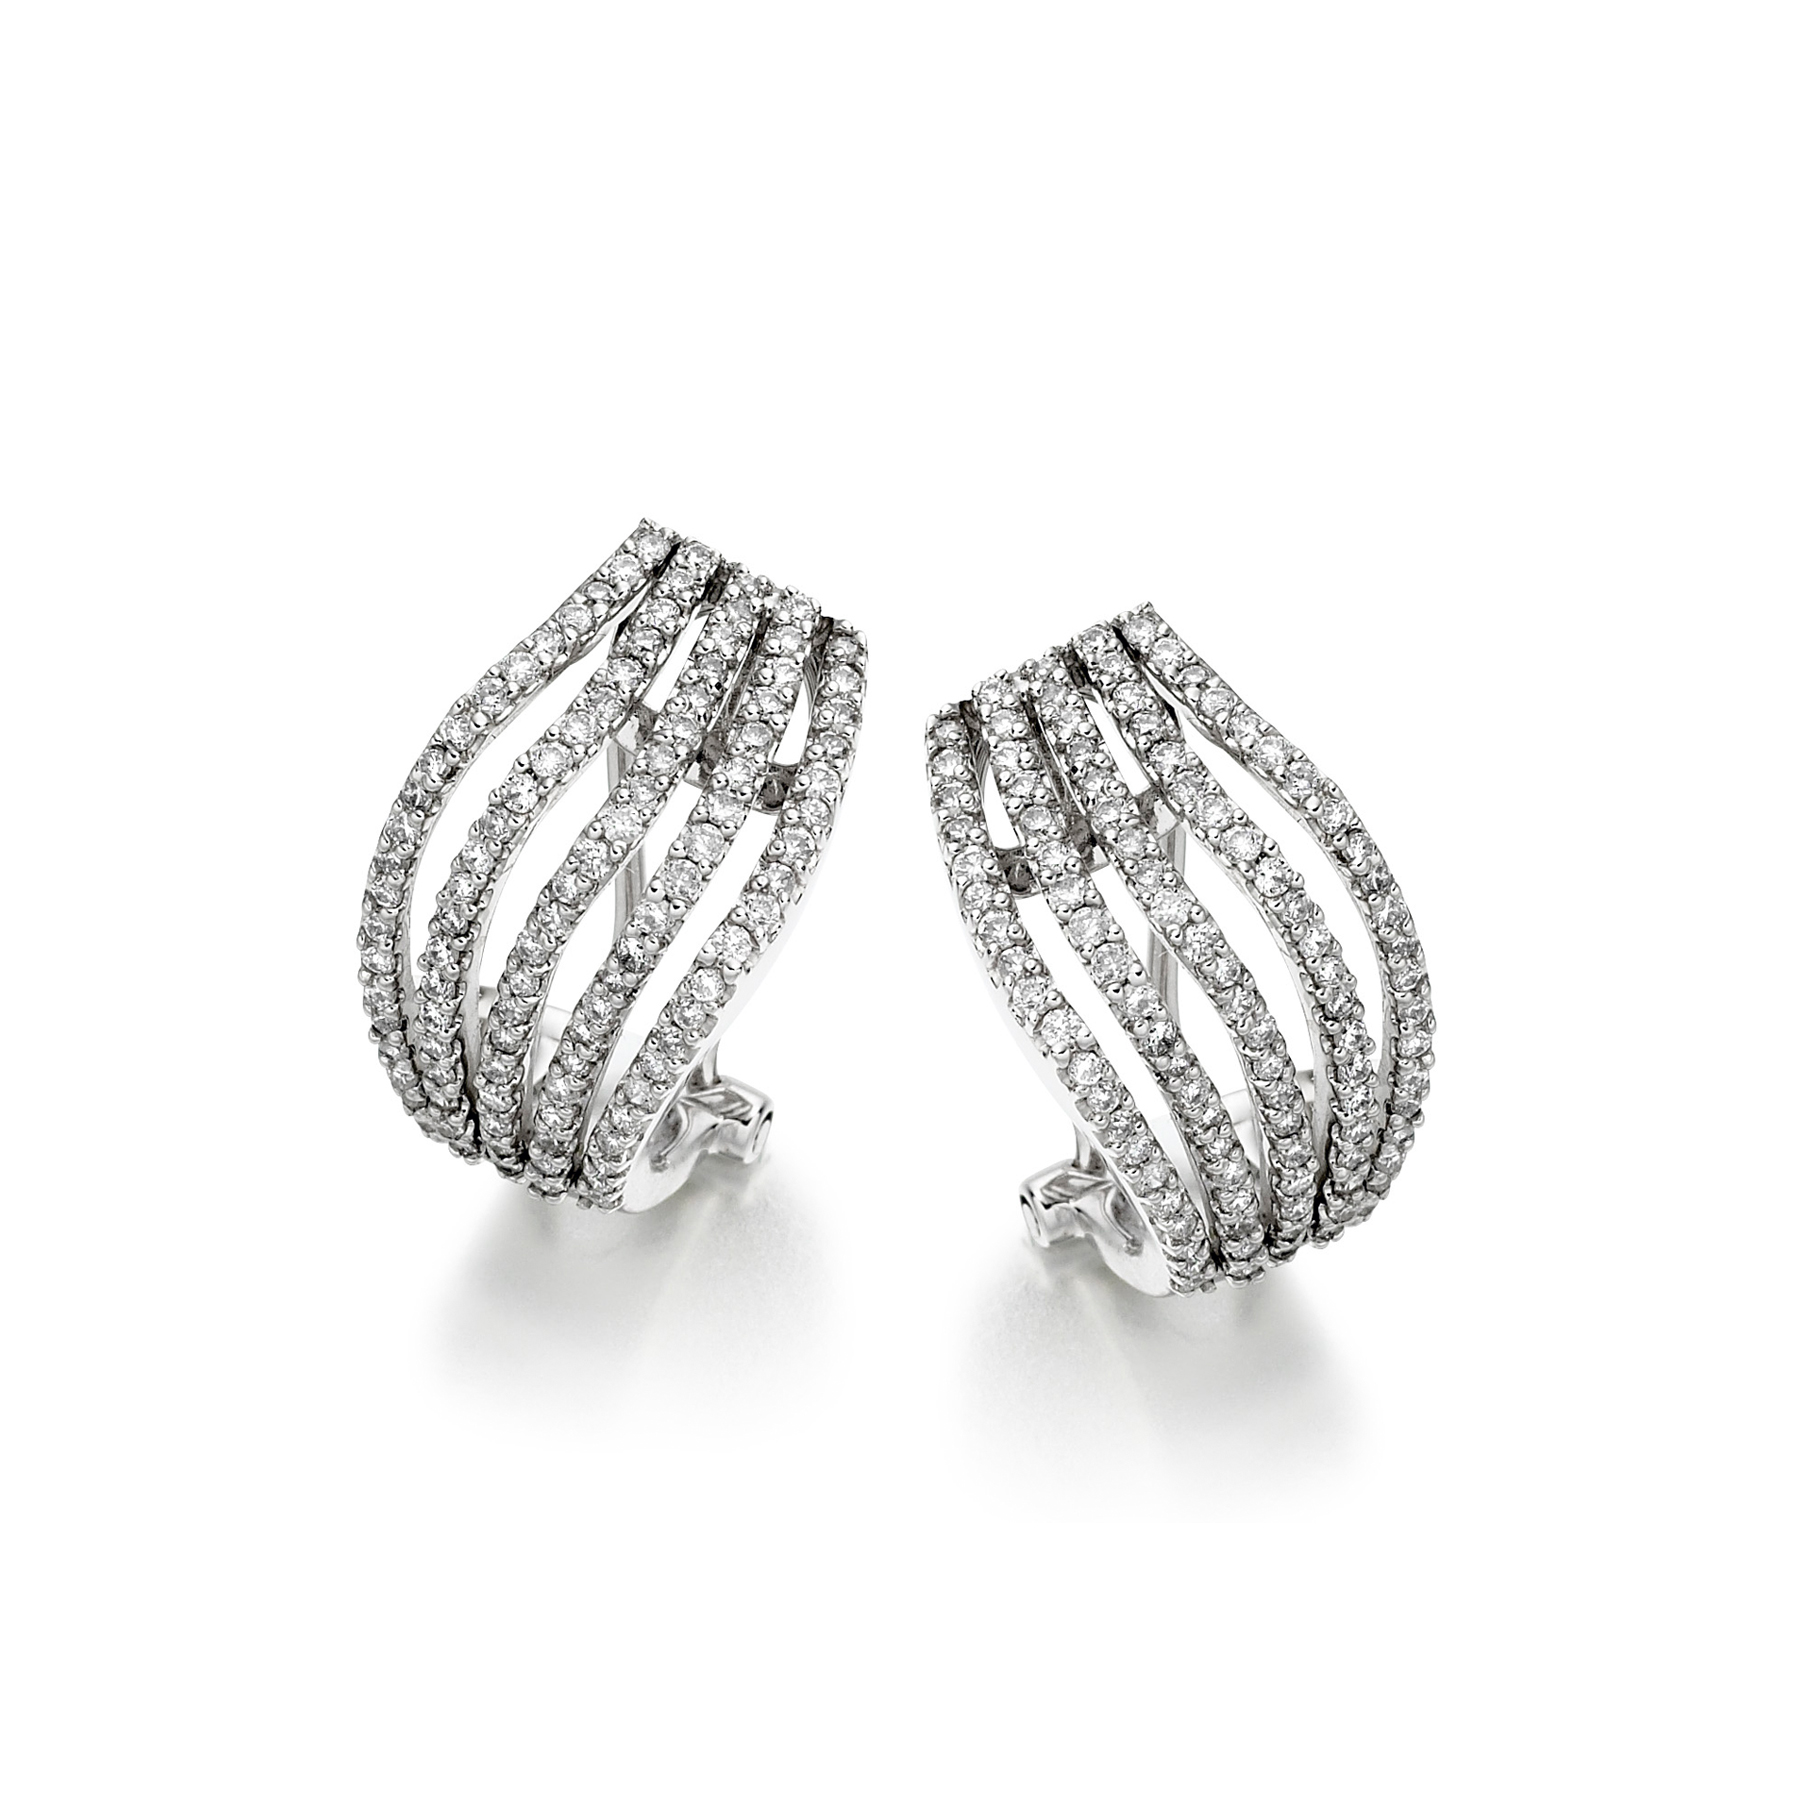 Four row diamond earrings